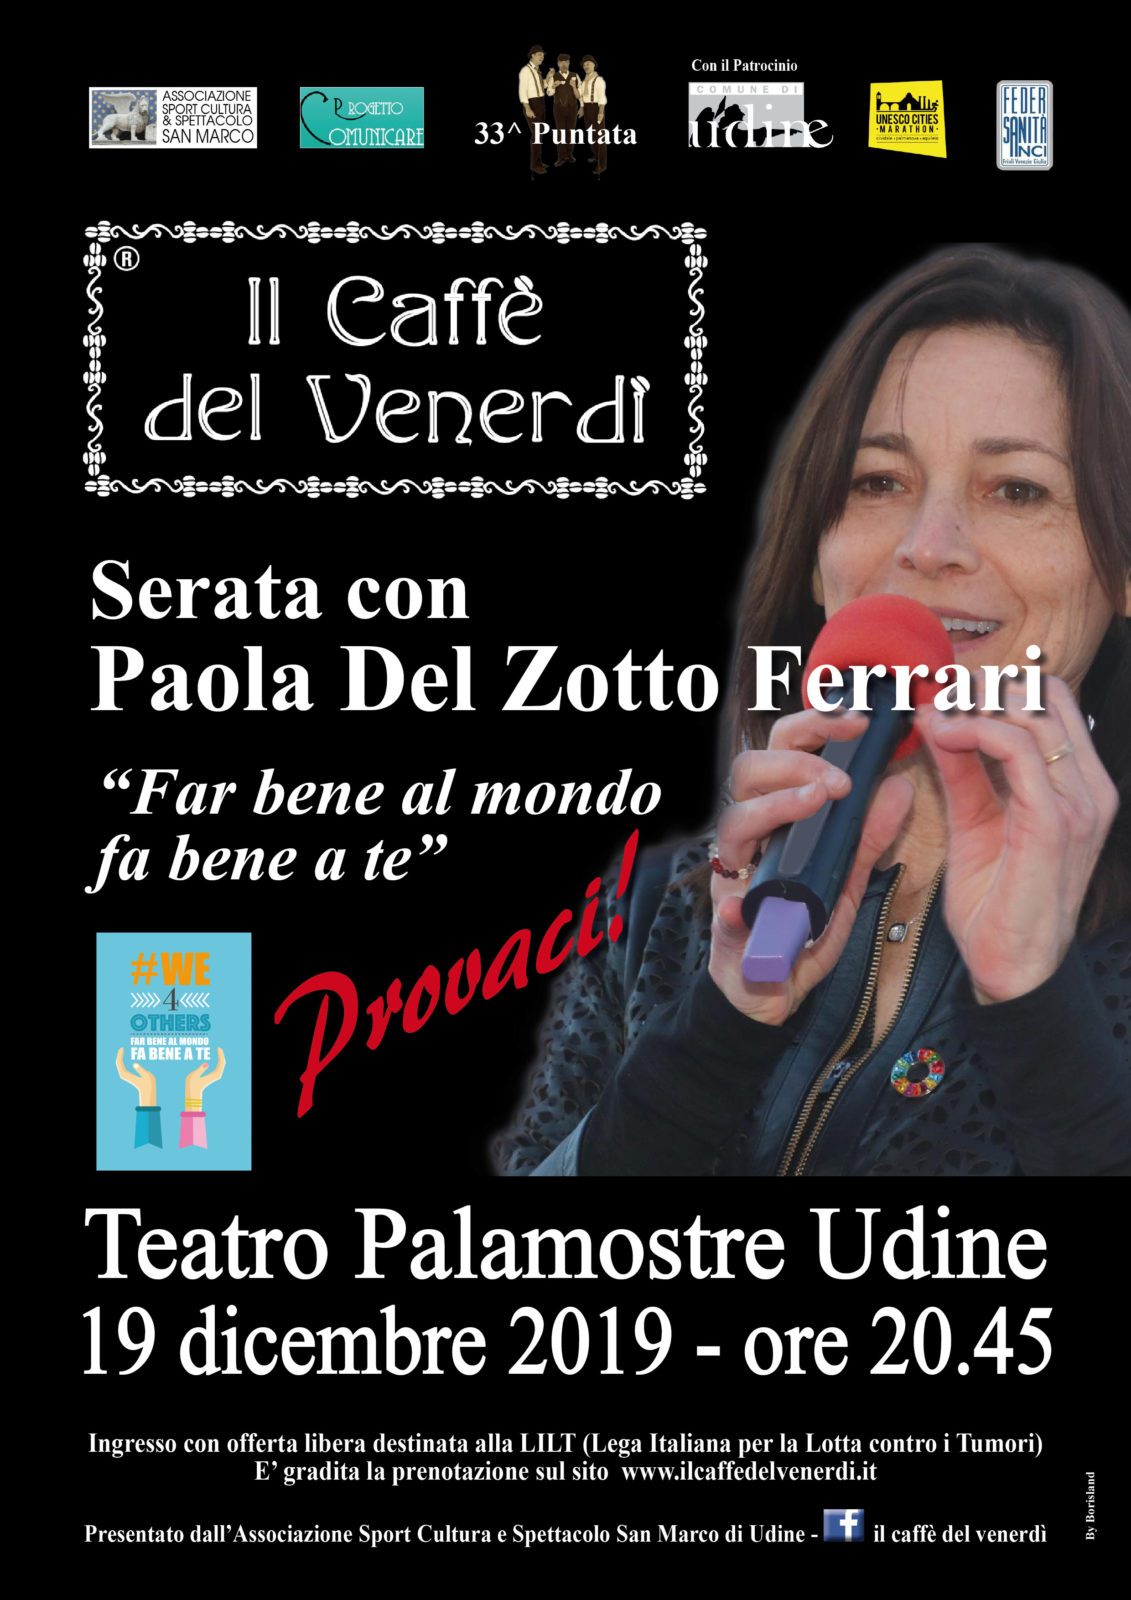 Il caffè del venerdì: Locandina serata Paola Del Zotto Ferrari